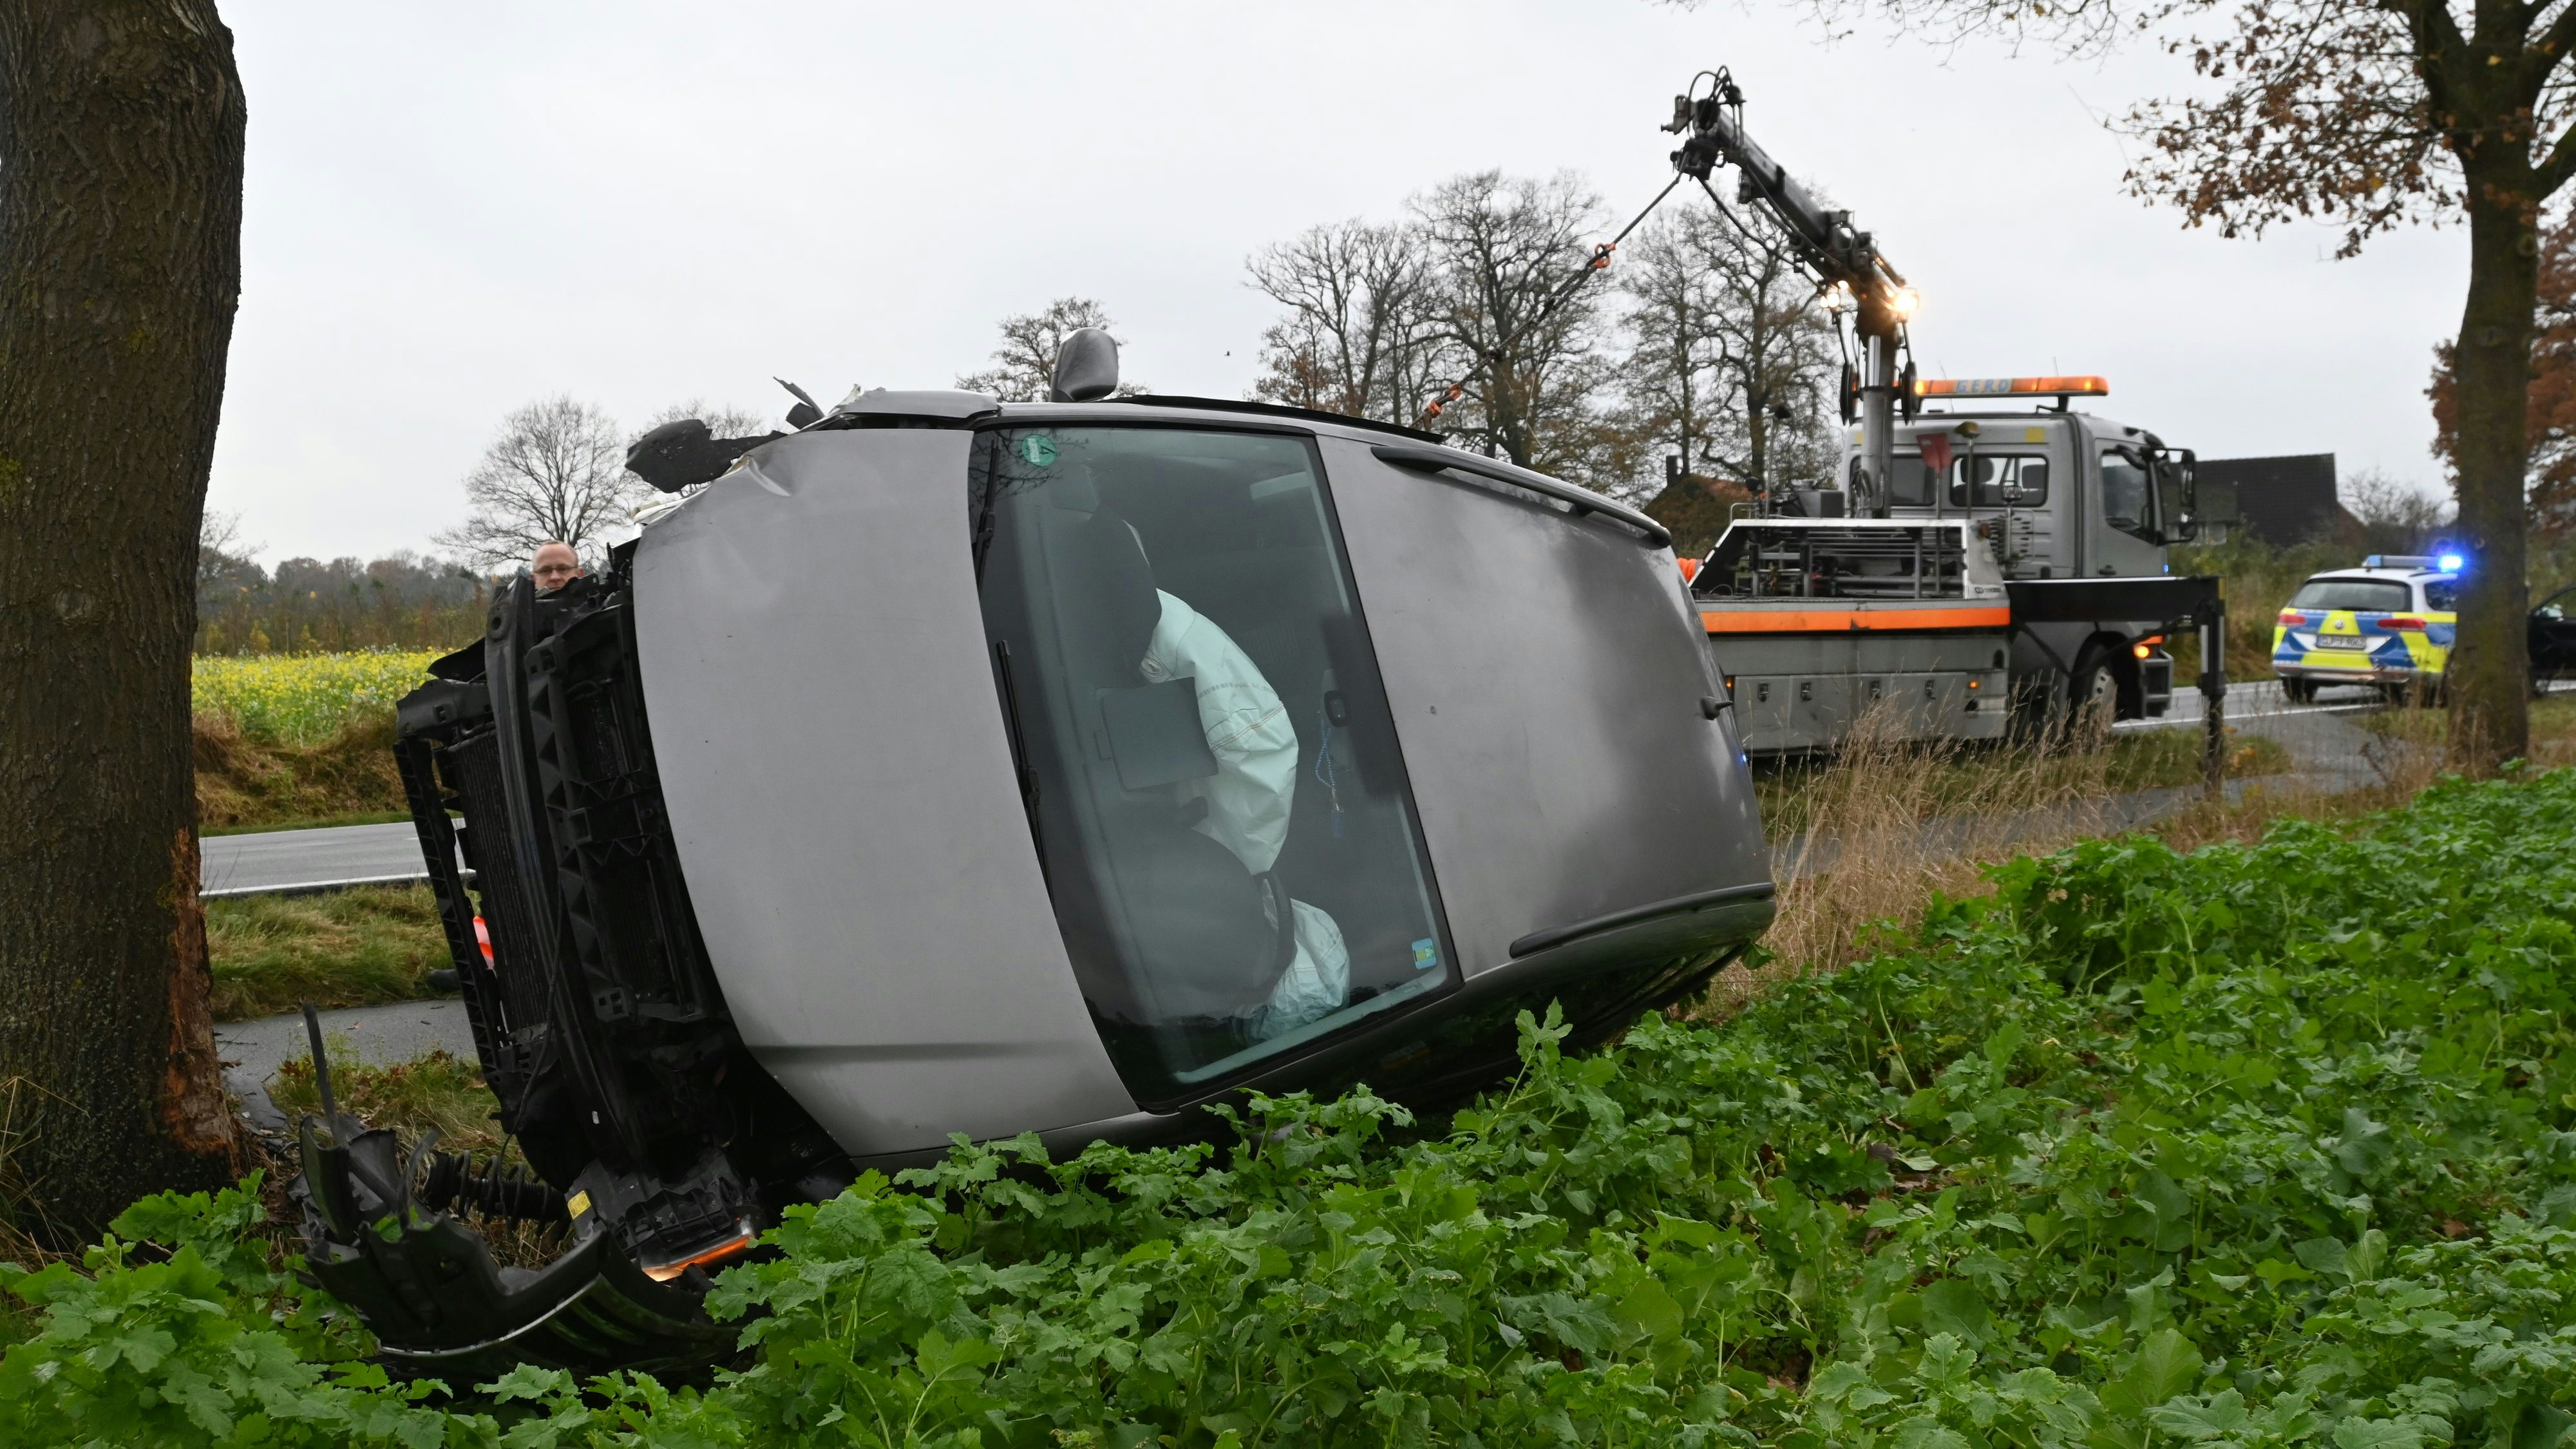 Auf der Seite blieb der Wagen liegen, nachdem er mit einem Baum kollidiert war. Foto: Thomas Vorwerk